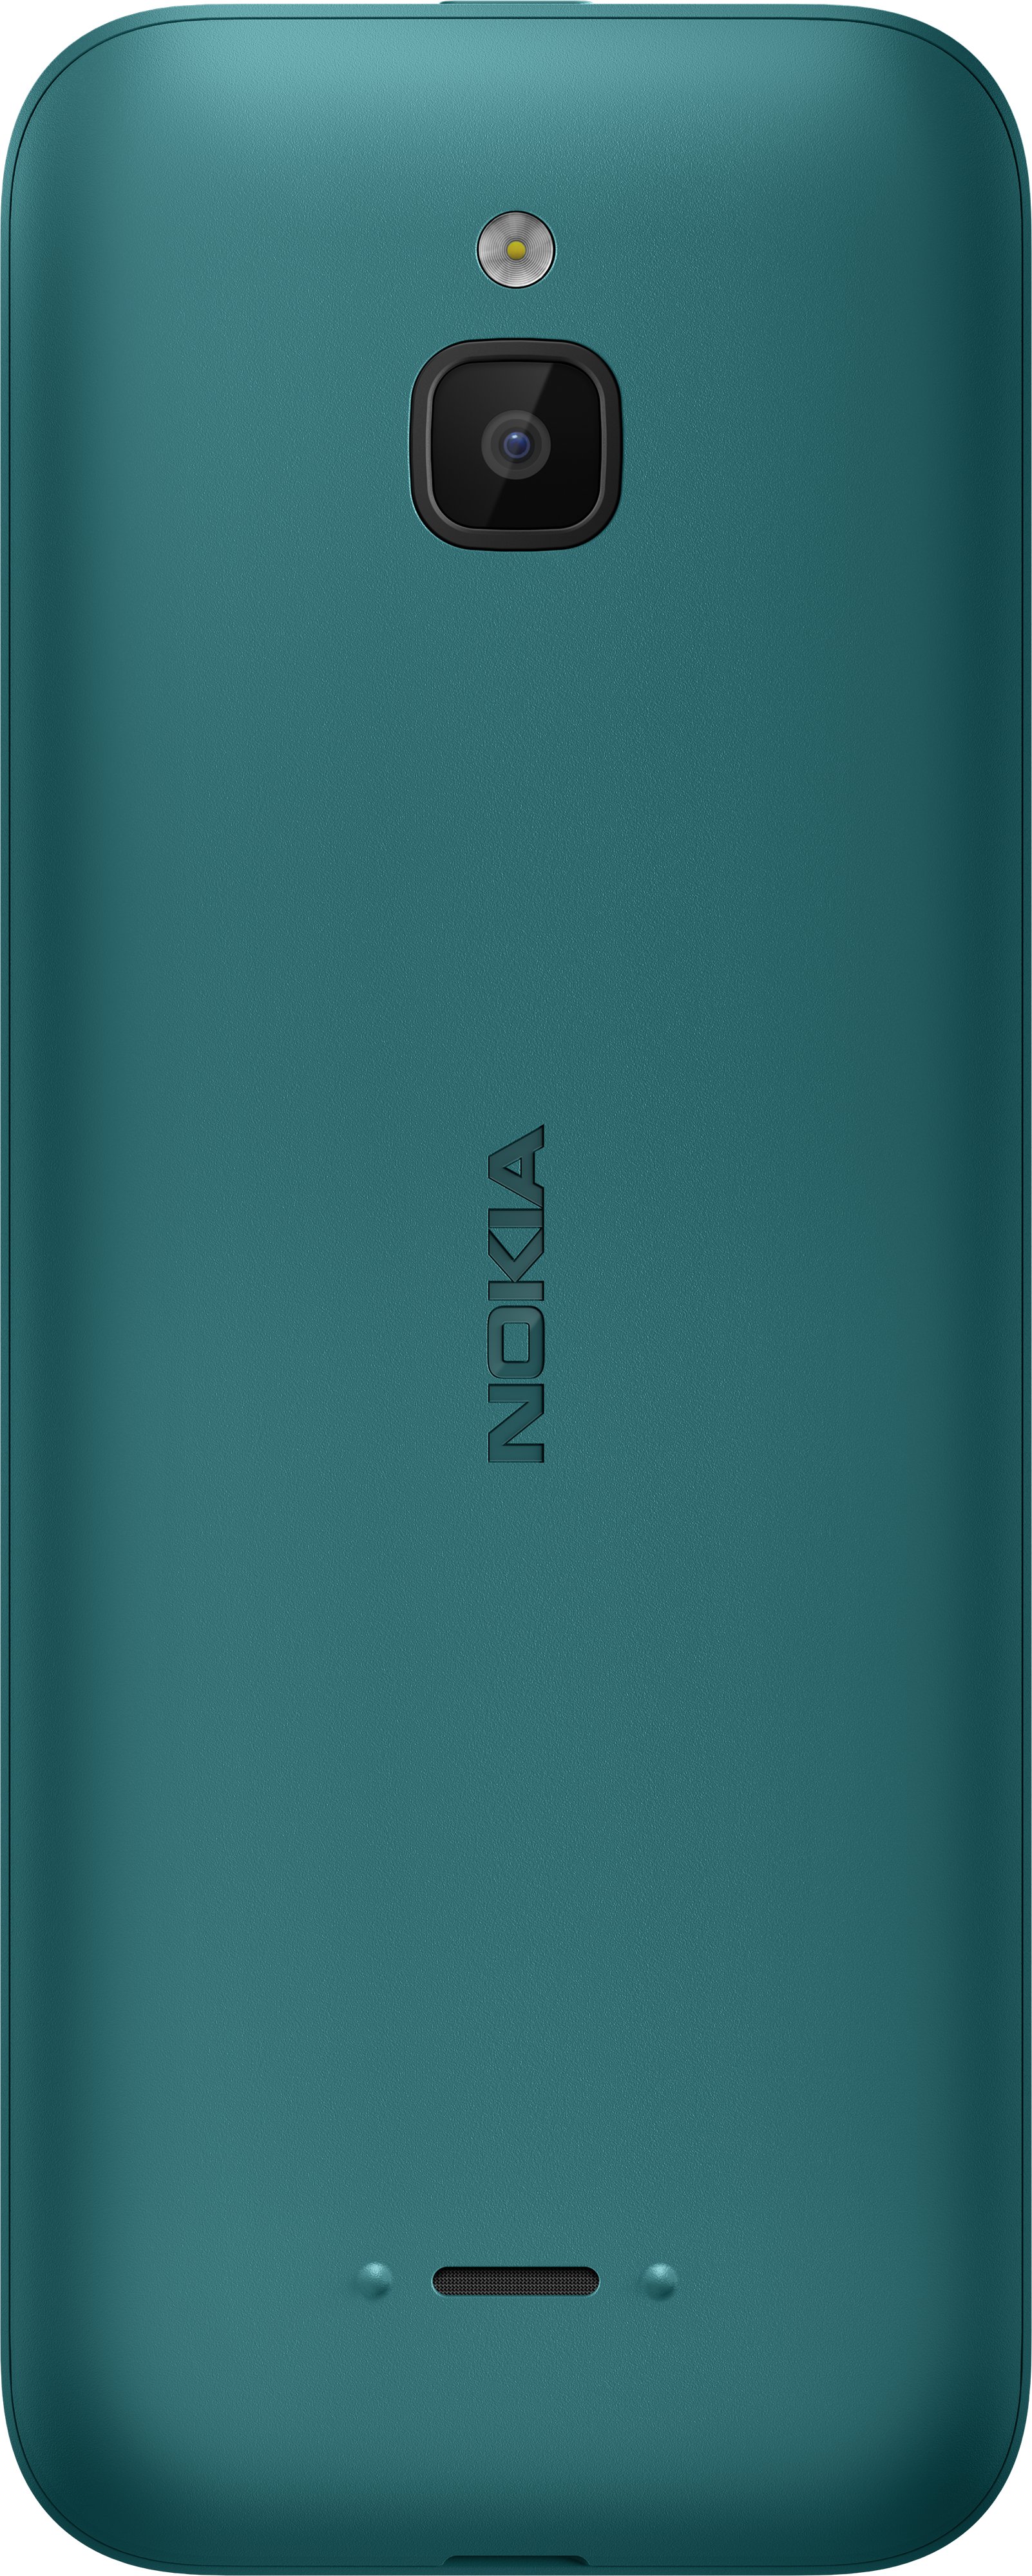 Nokia 6300 4G, Desbloqueado, Dual SIM, Hotspot WiFi, Aplicaciones  sociales, Google Maps y Asistente